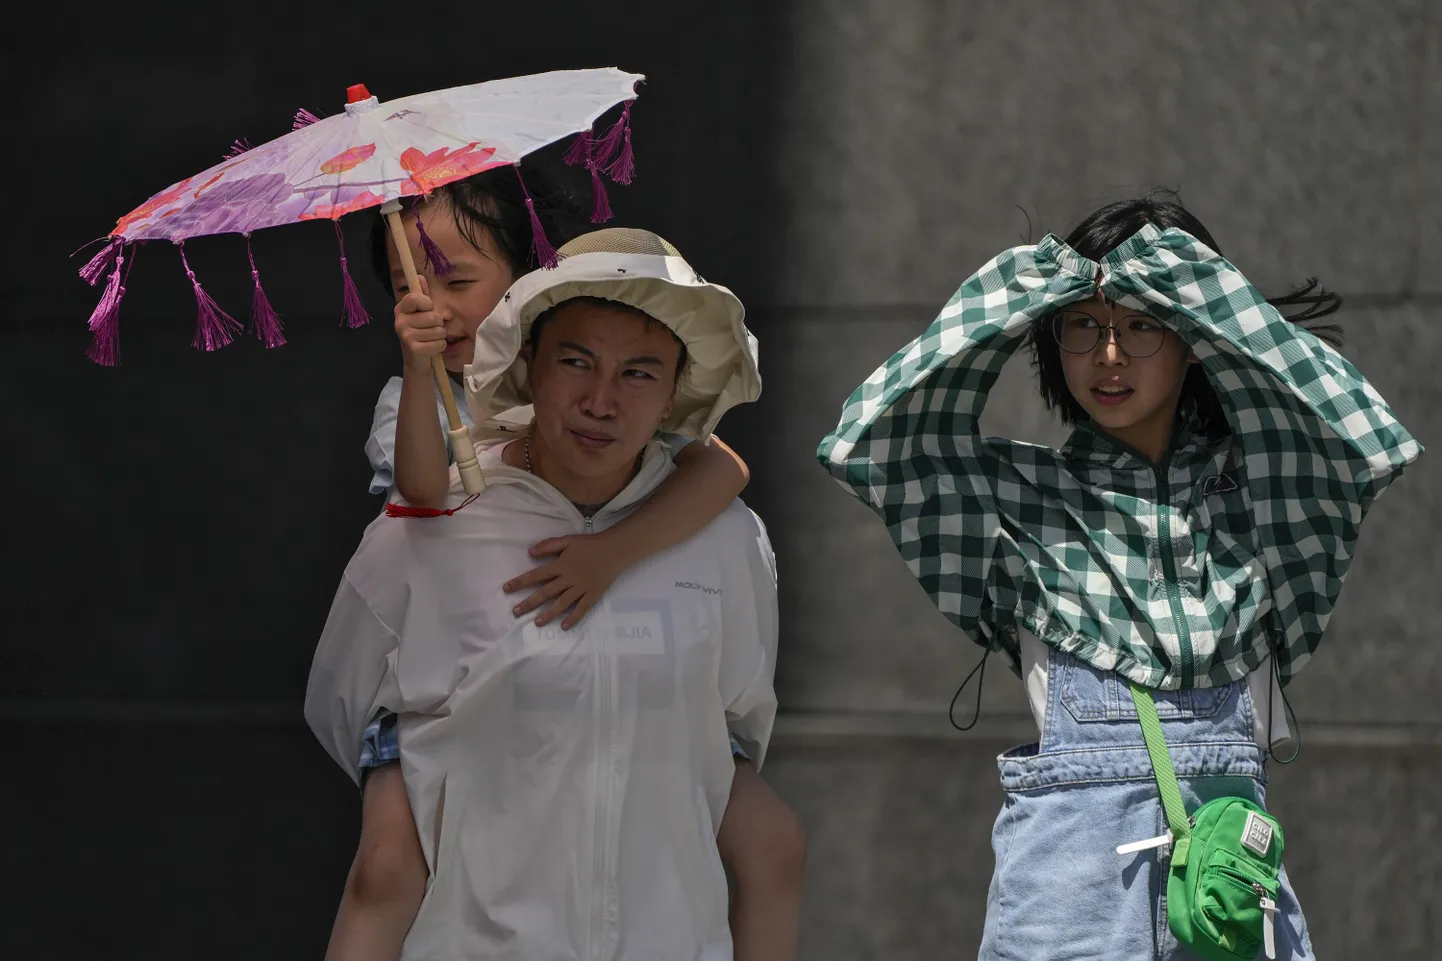 Пекинская семья использует одежду и тень, чтобы защититься от палящего солнца во время нынешней жары, которая достигает 40 градусов по Цельсию.